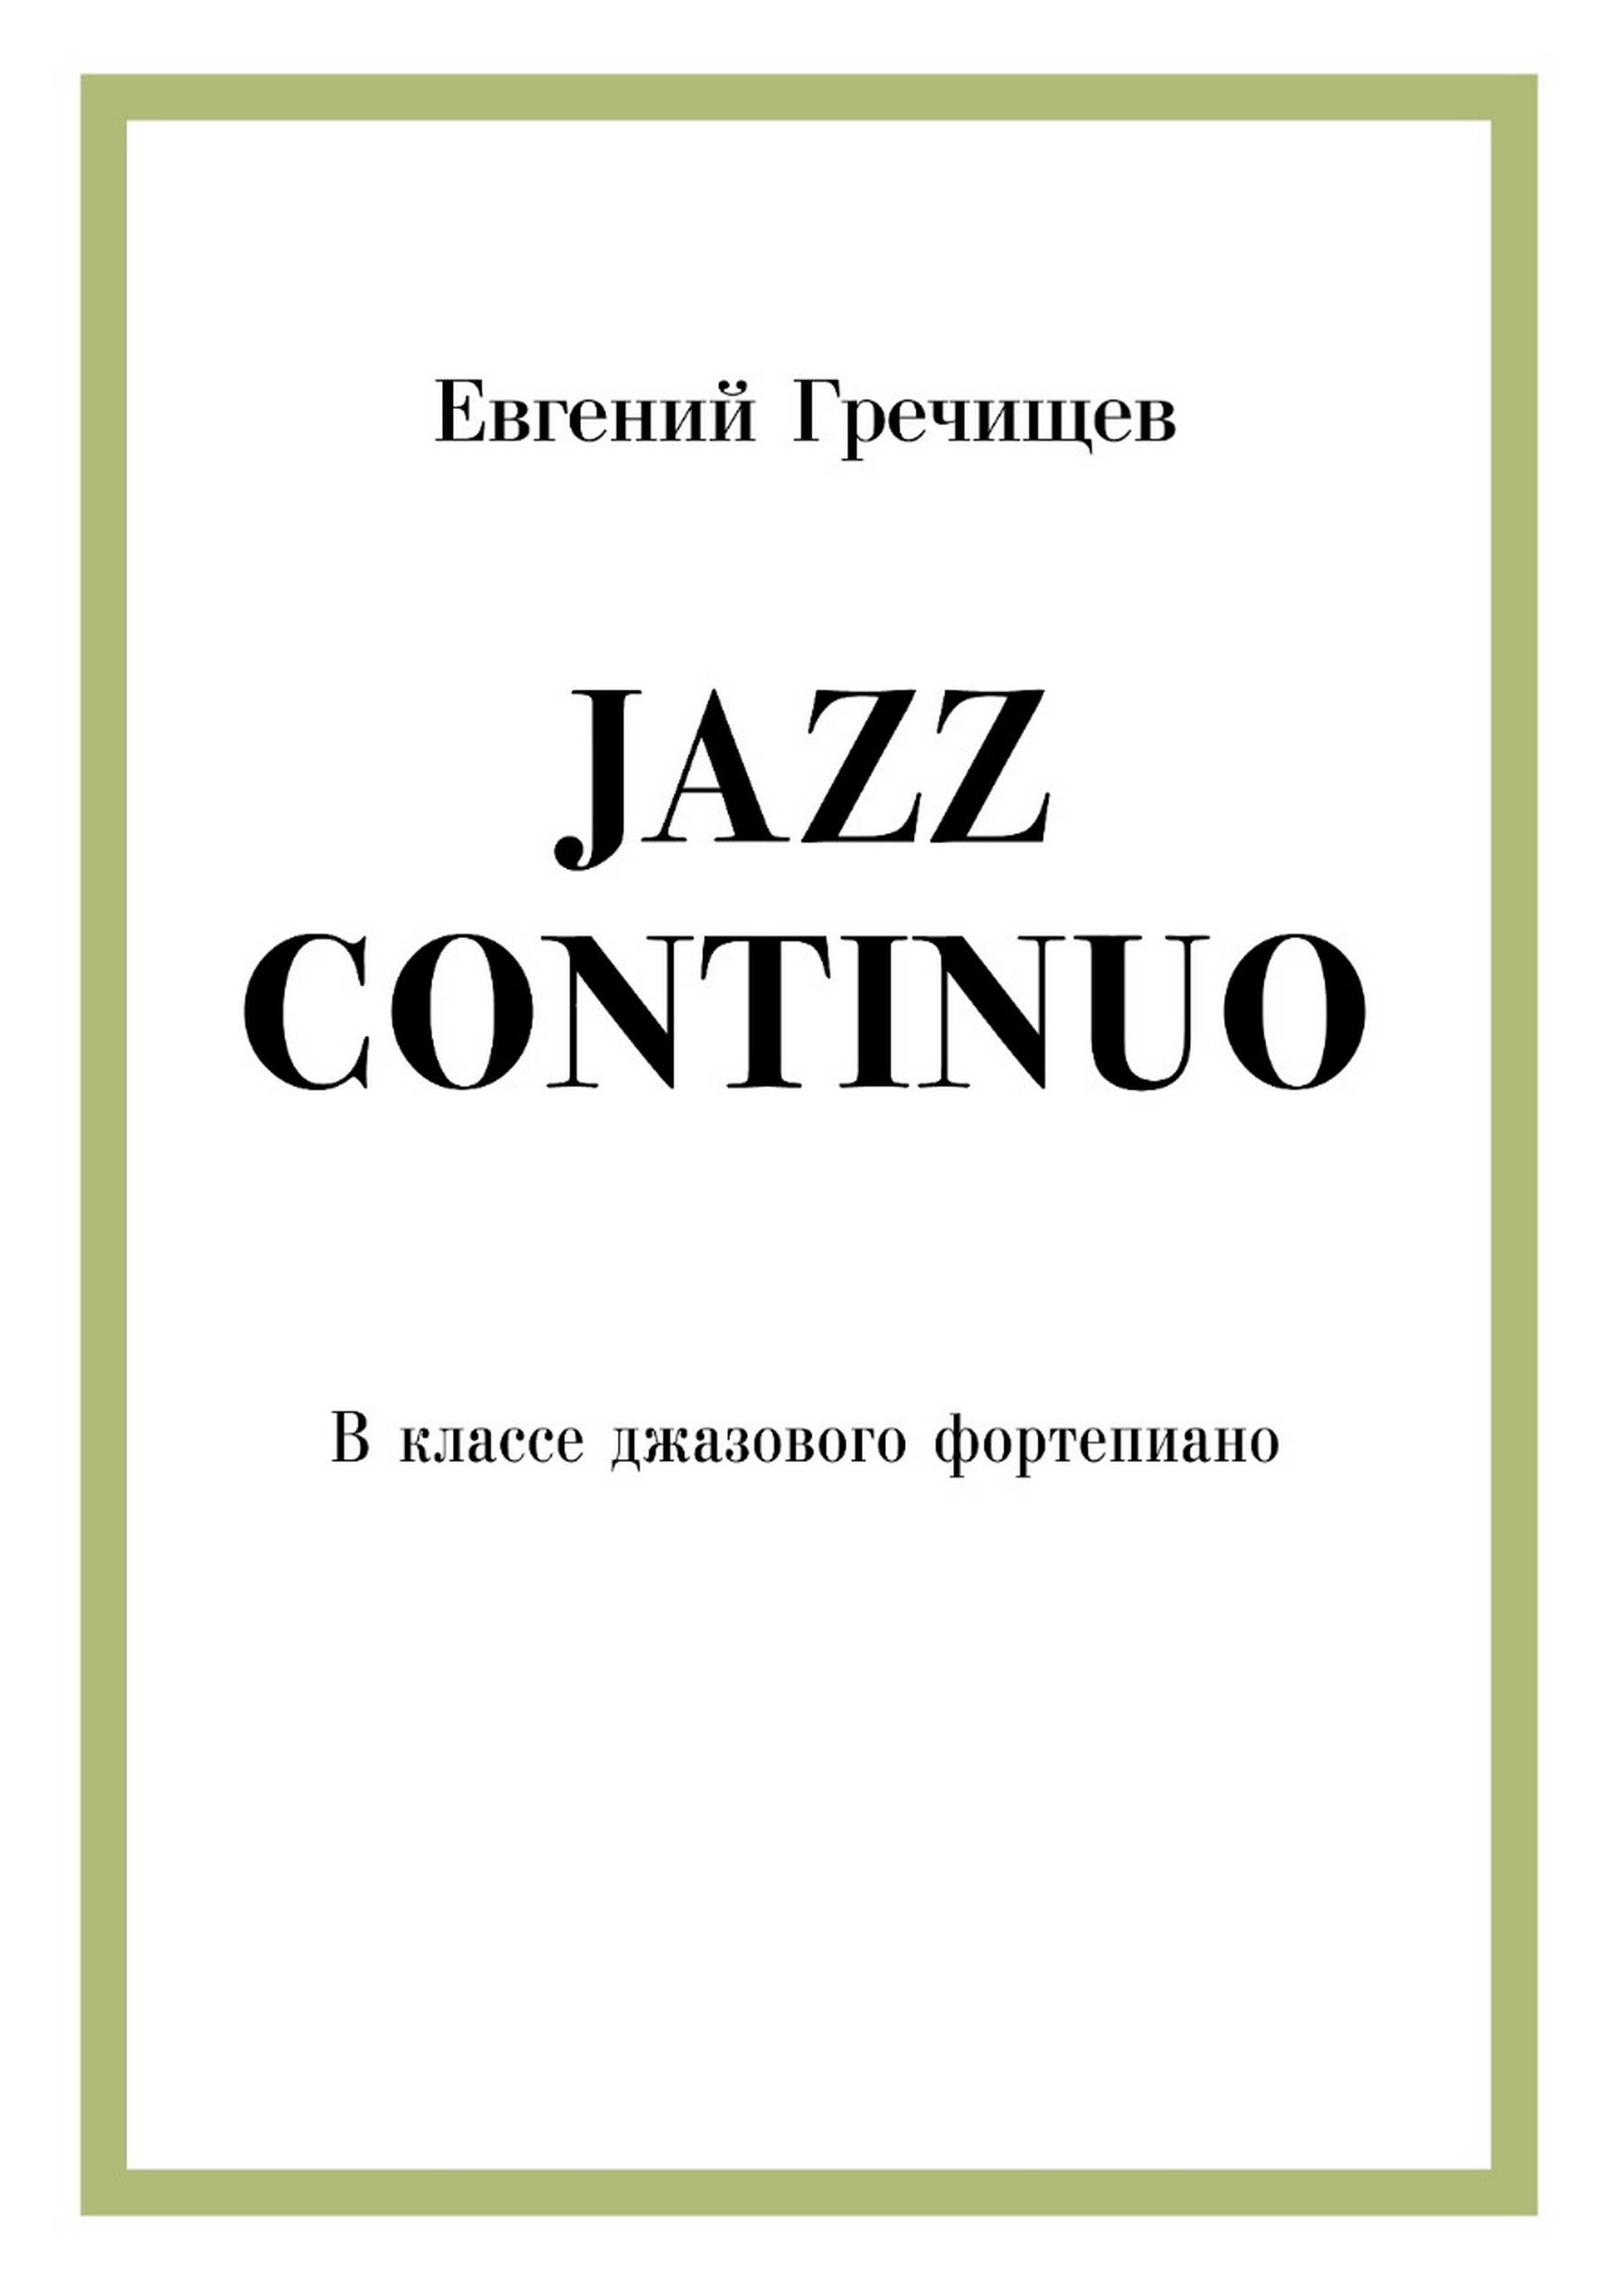 Иллюстрация: Концерт класса джазового фортепиано Евгения Гречищева